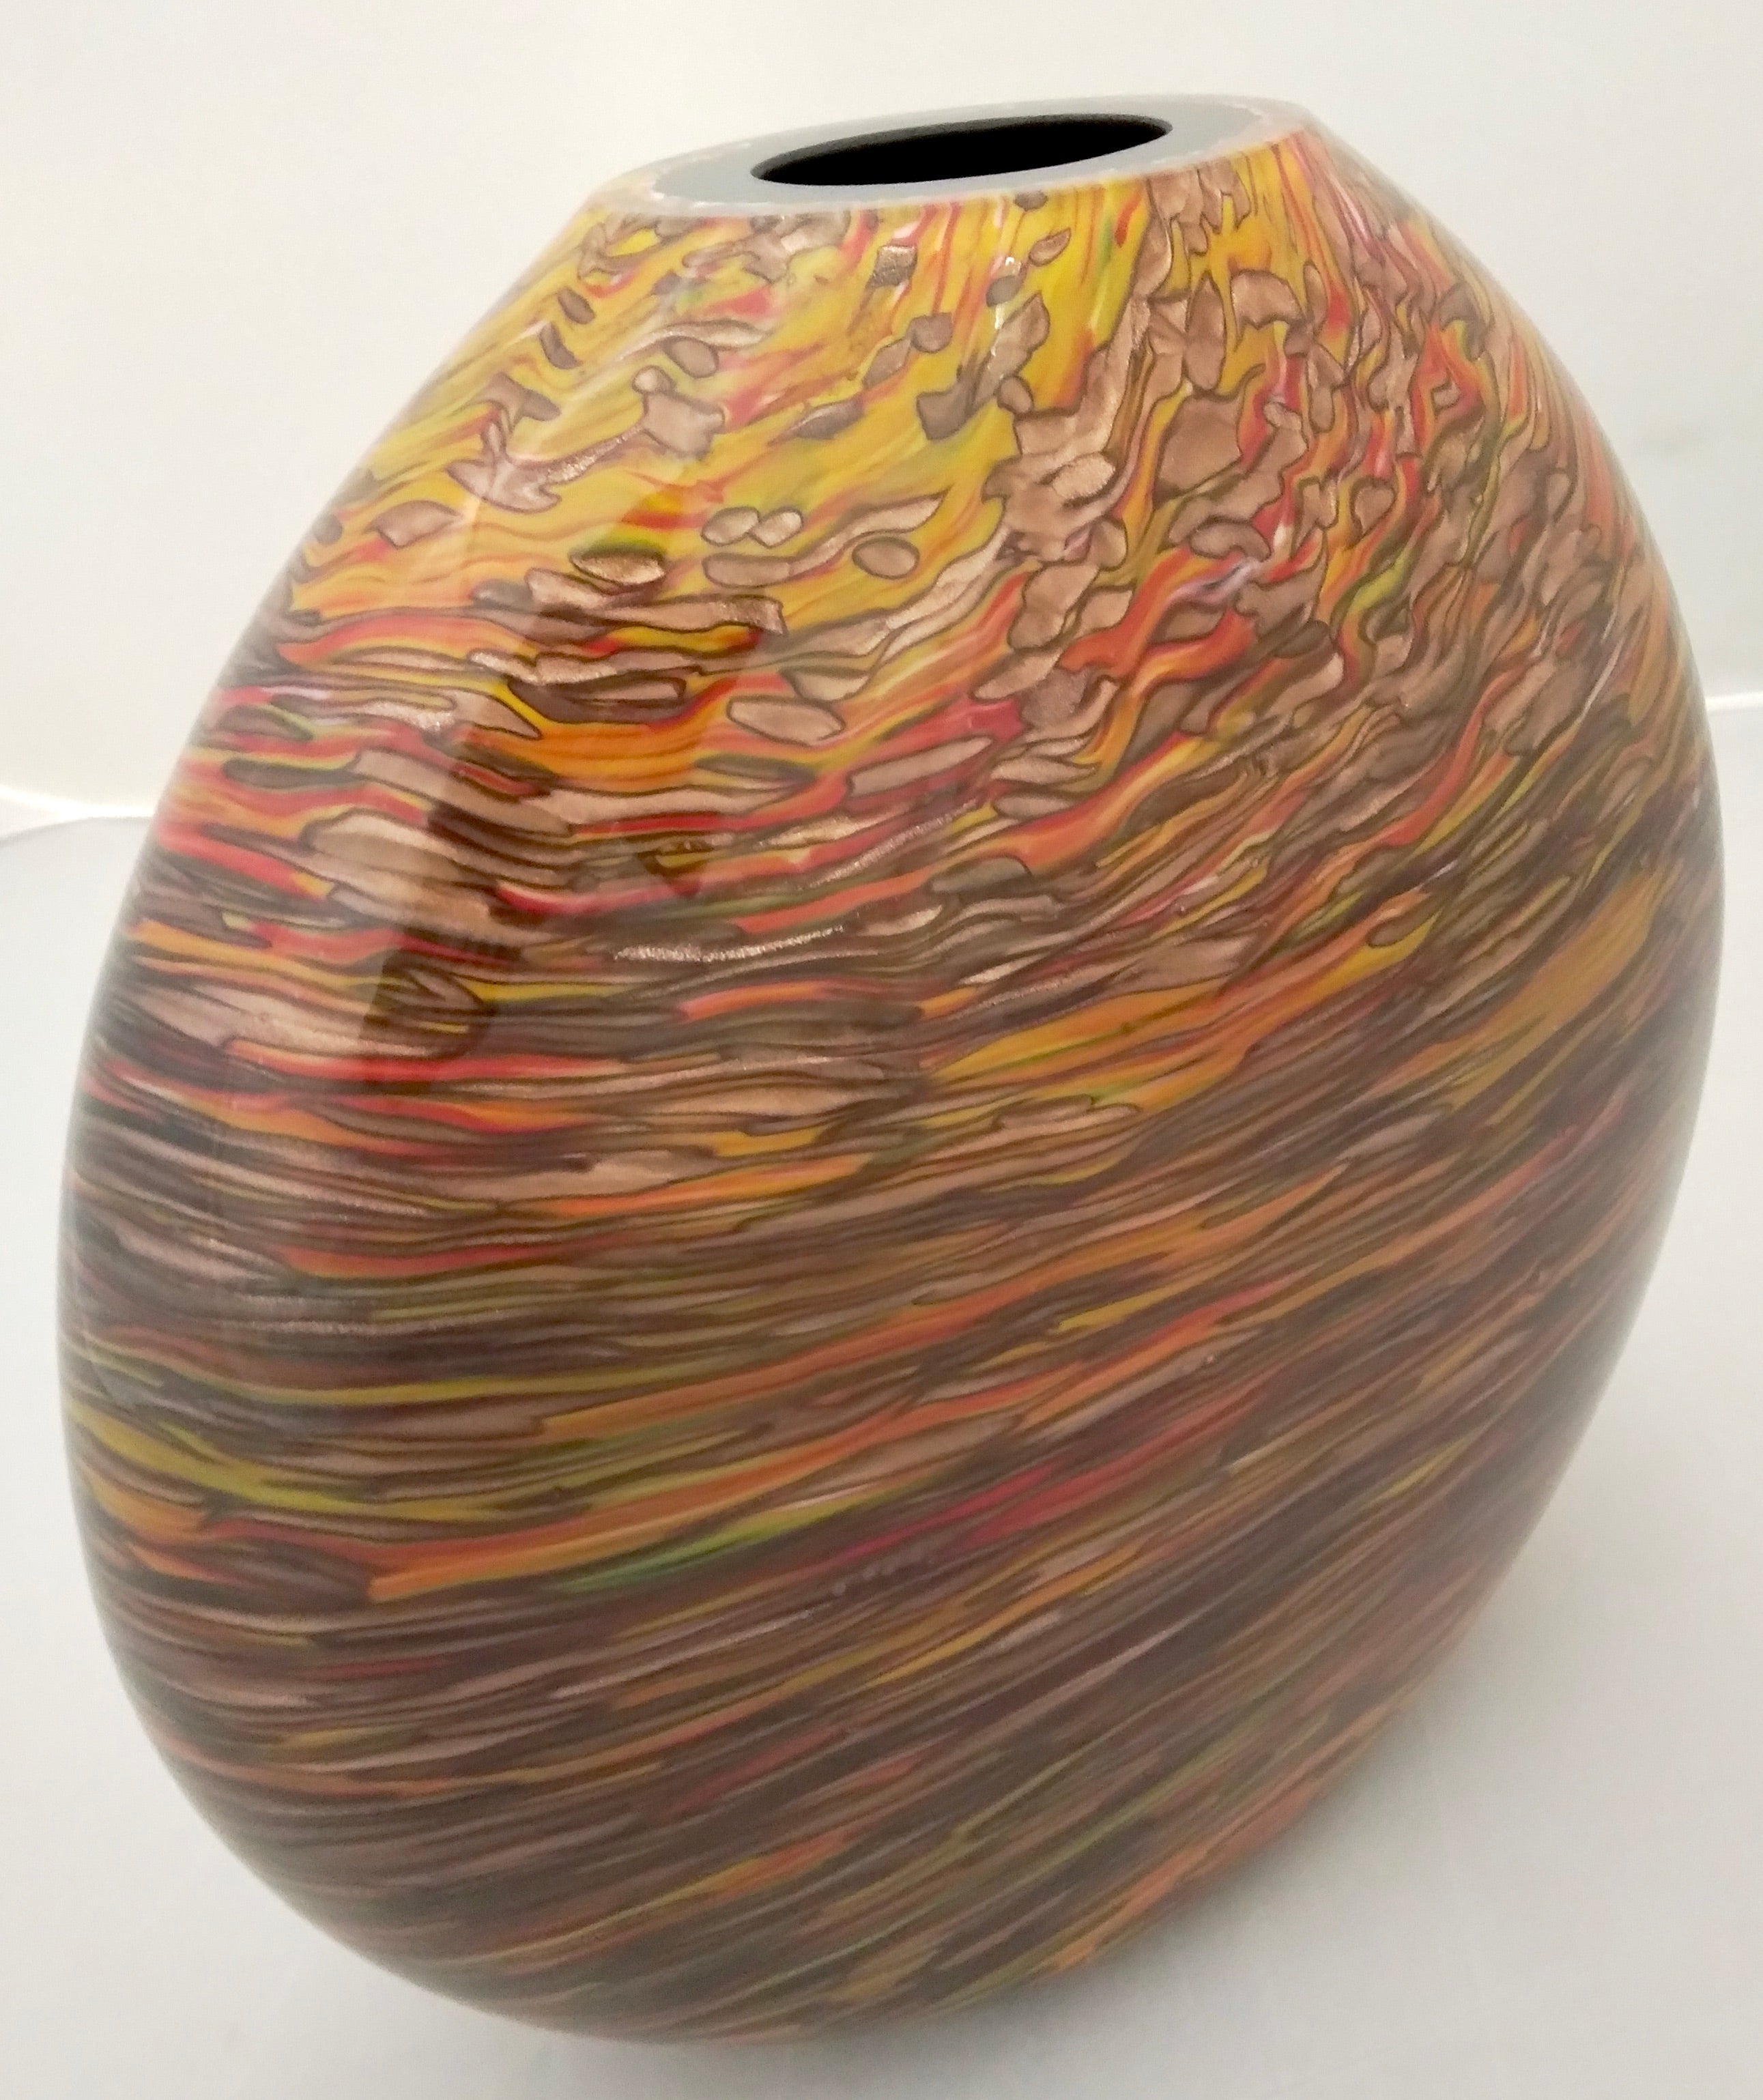 Un vase ovale elliptique saisissant, des œuvres d'art précieuses en verre noir massif soufflé de Murano, travaillées comme une peinture moderne avec un décor feu organique étendu et sophistiqué de murrine allongée superposée dans des couleurs